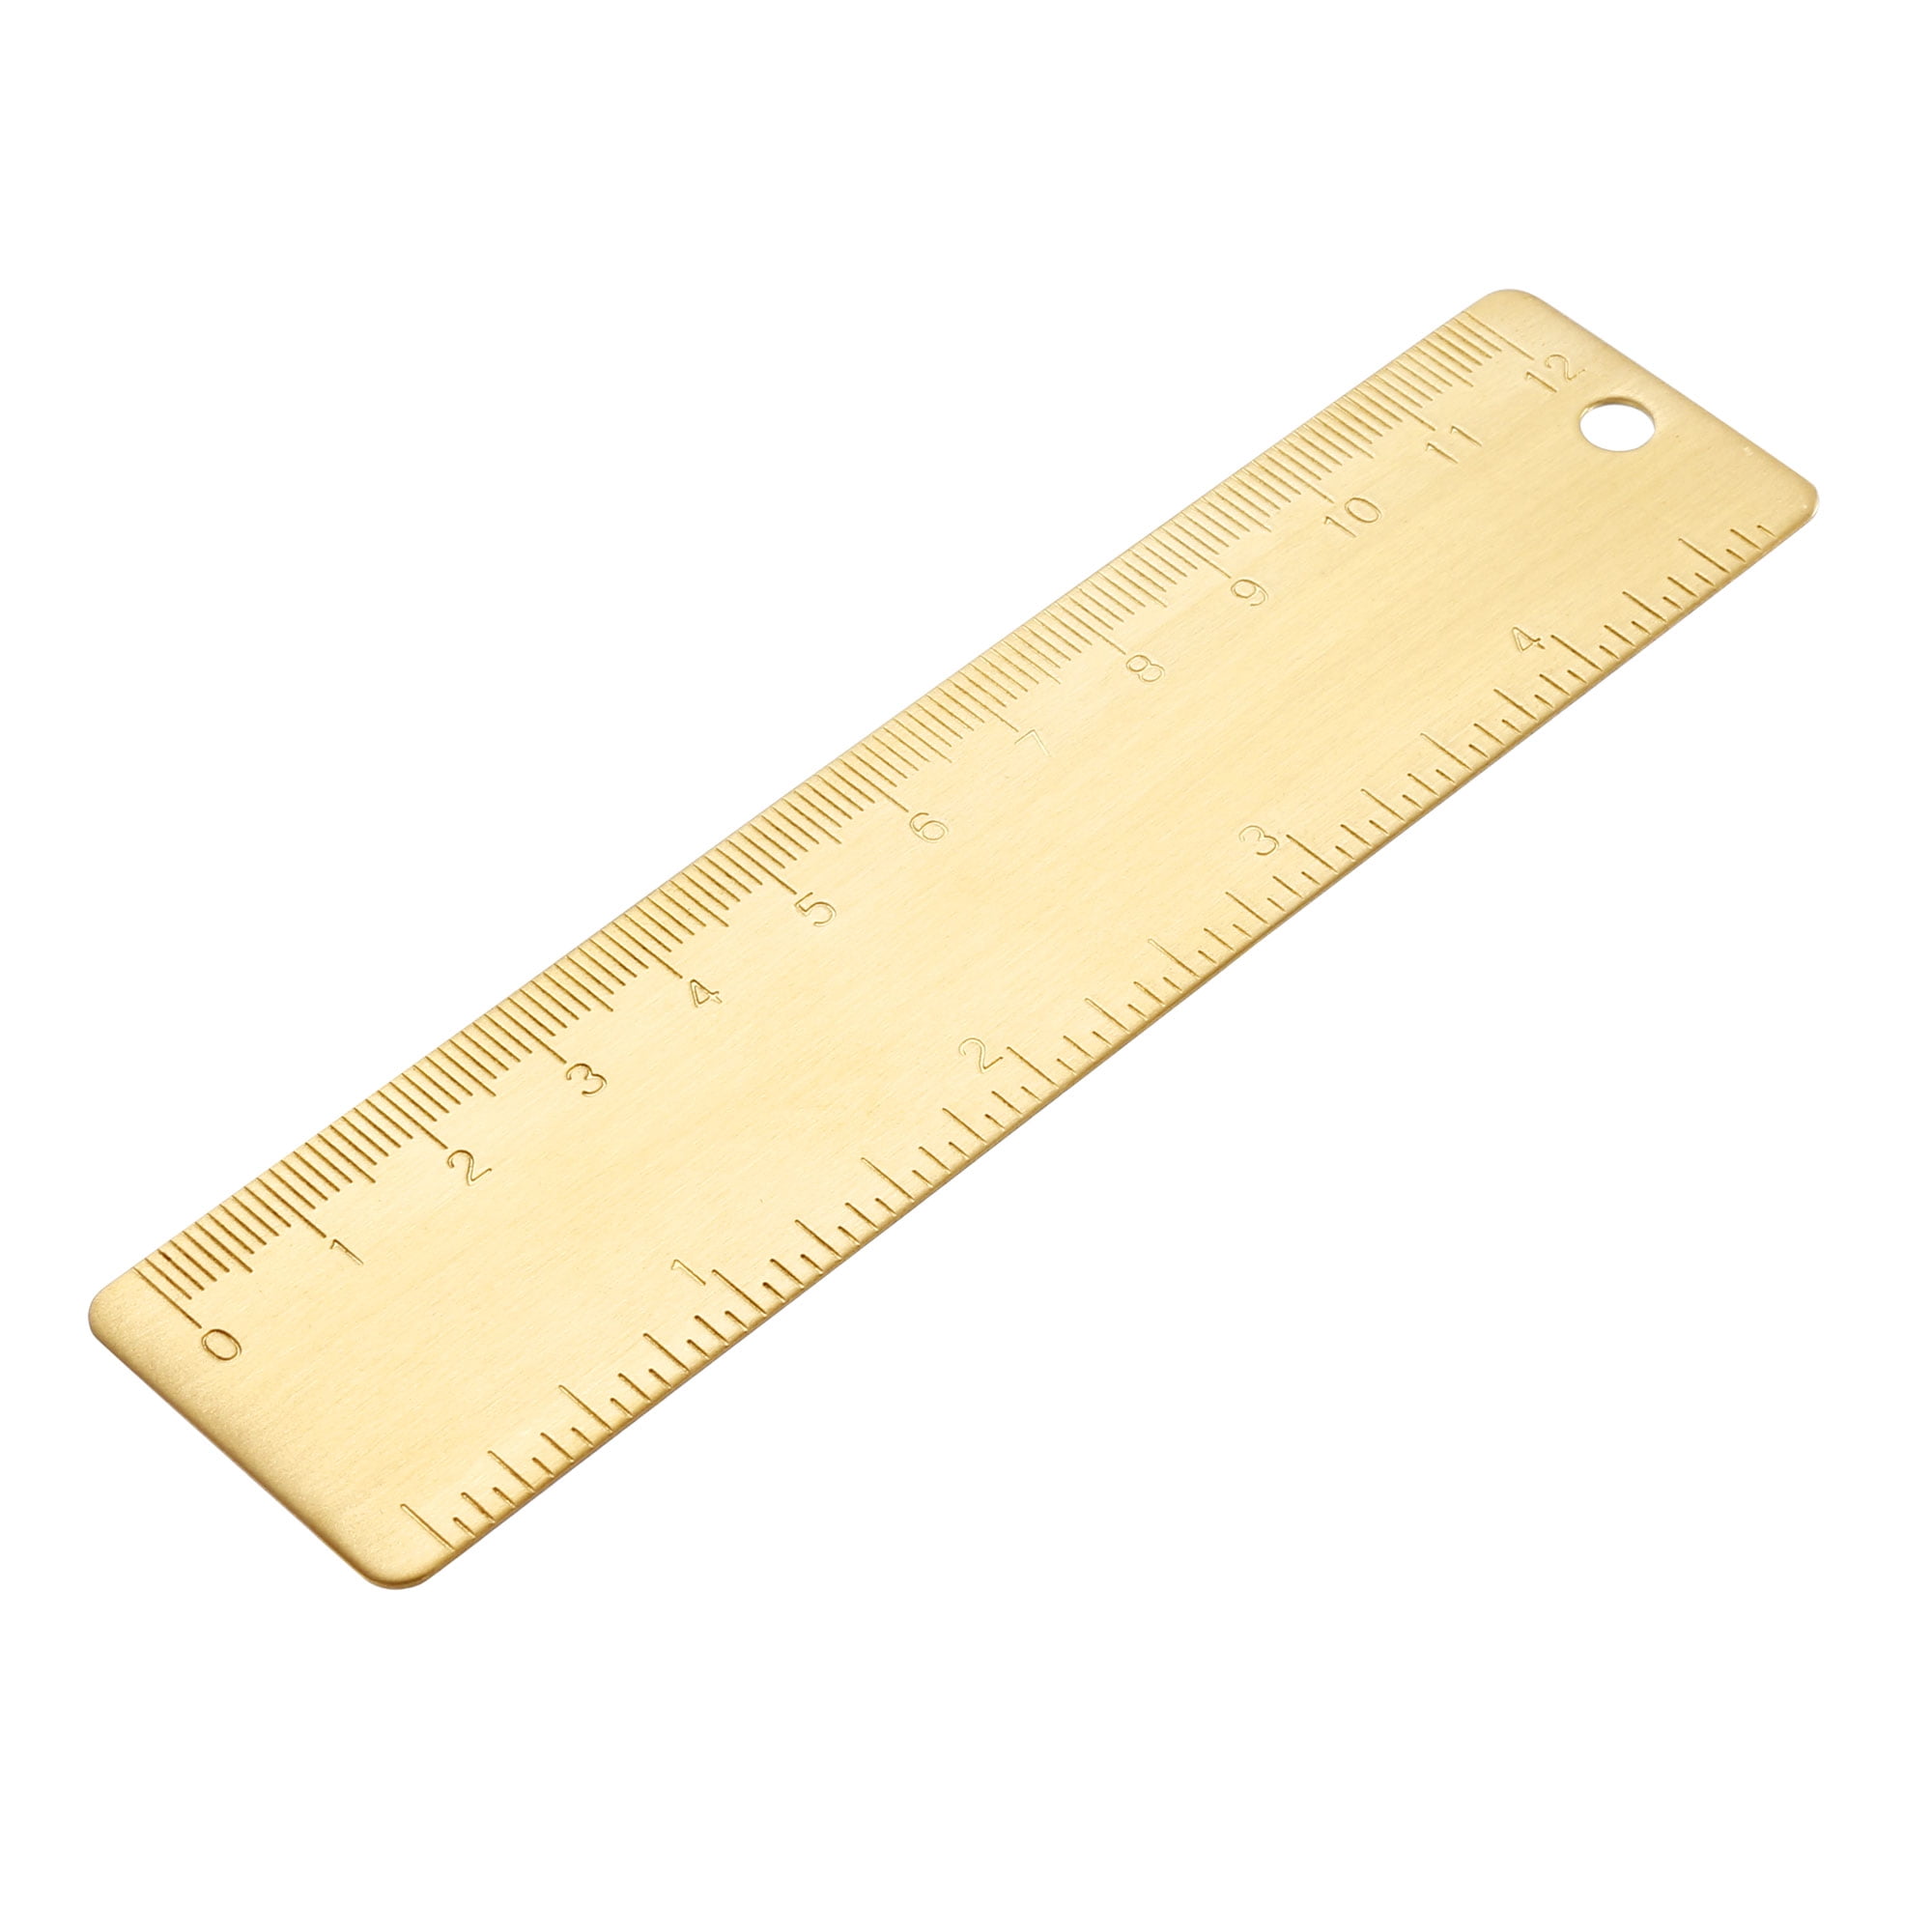 life size millimeter ruler